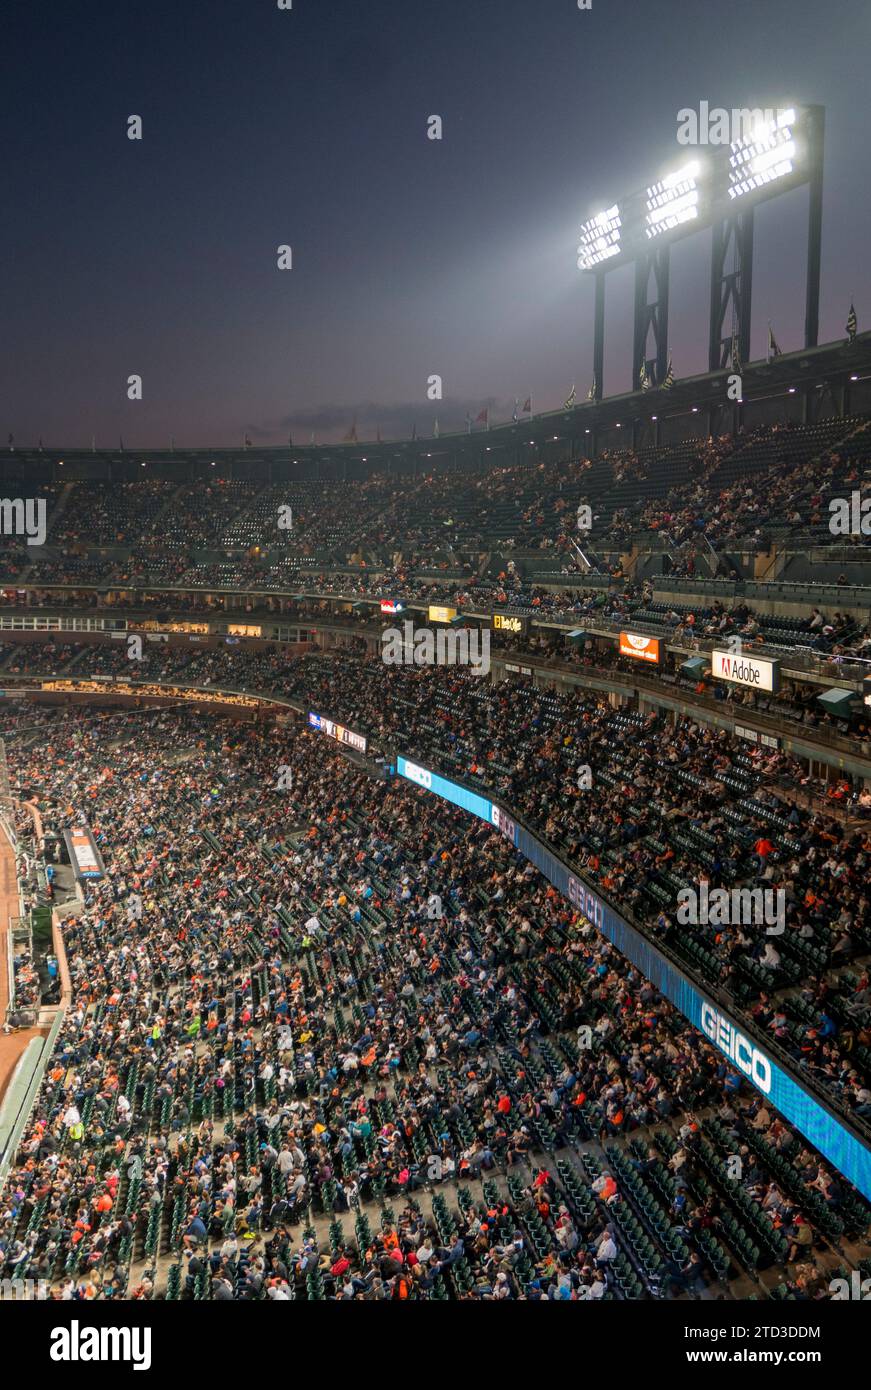 SAN FRANCISCO, KALIFORNIEN, 23. AUGUST: Luftaufnahme der Menge während des Baseballspiels mit den Giants gegen die Milwaukee Brewers in San Francisco Stockfoto